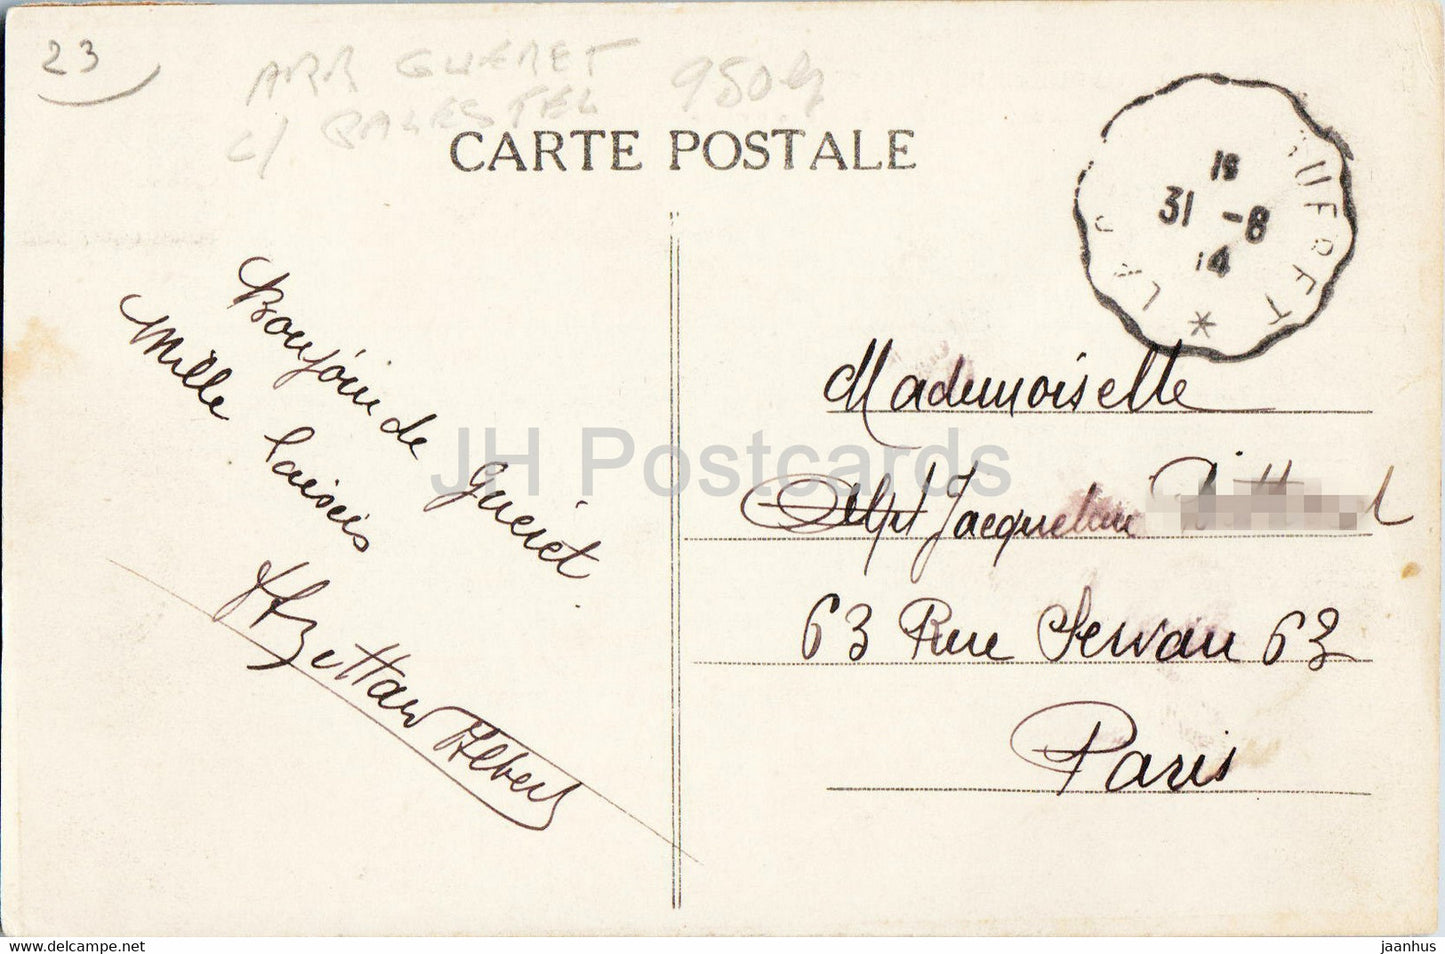 Crozant - Les Ruines - La Creuse Pittoresque - 953 - alte Postkarte - 1914 - Frankreich - gebraucht